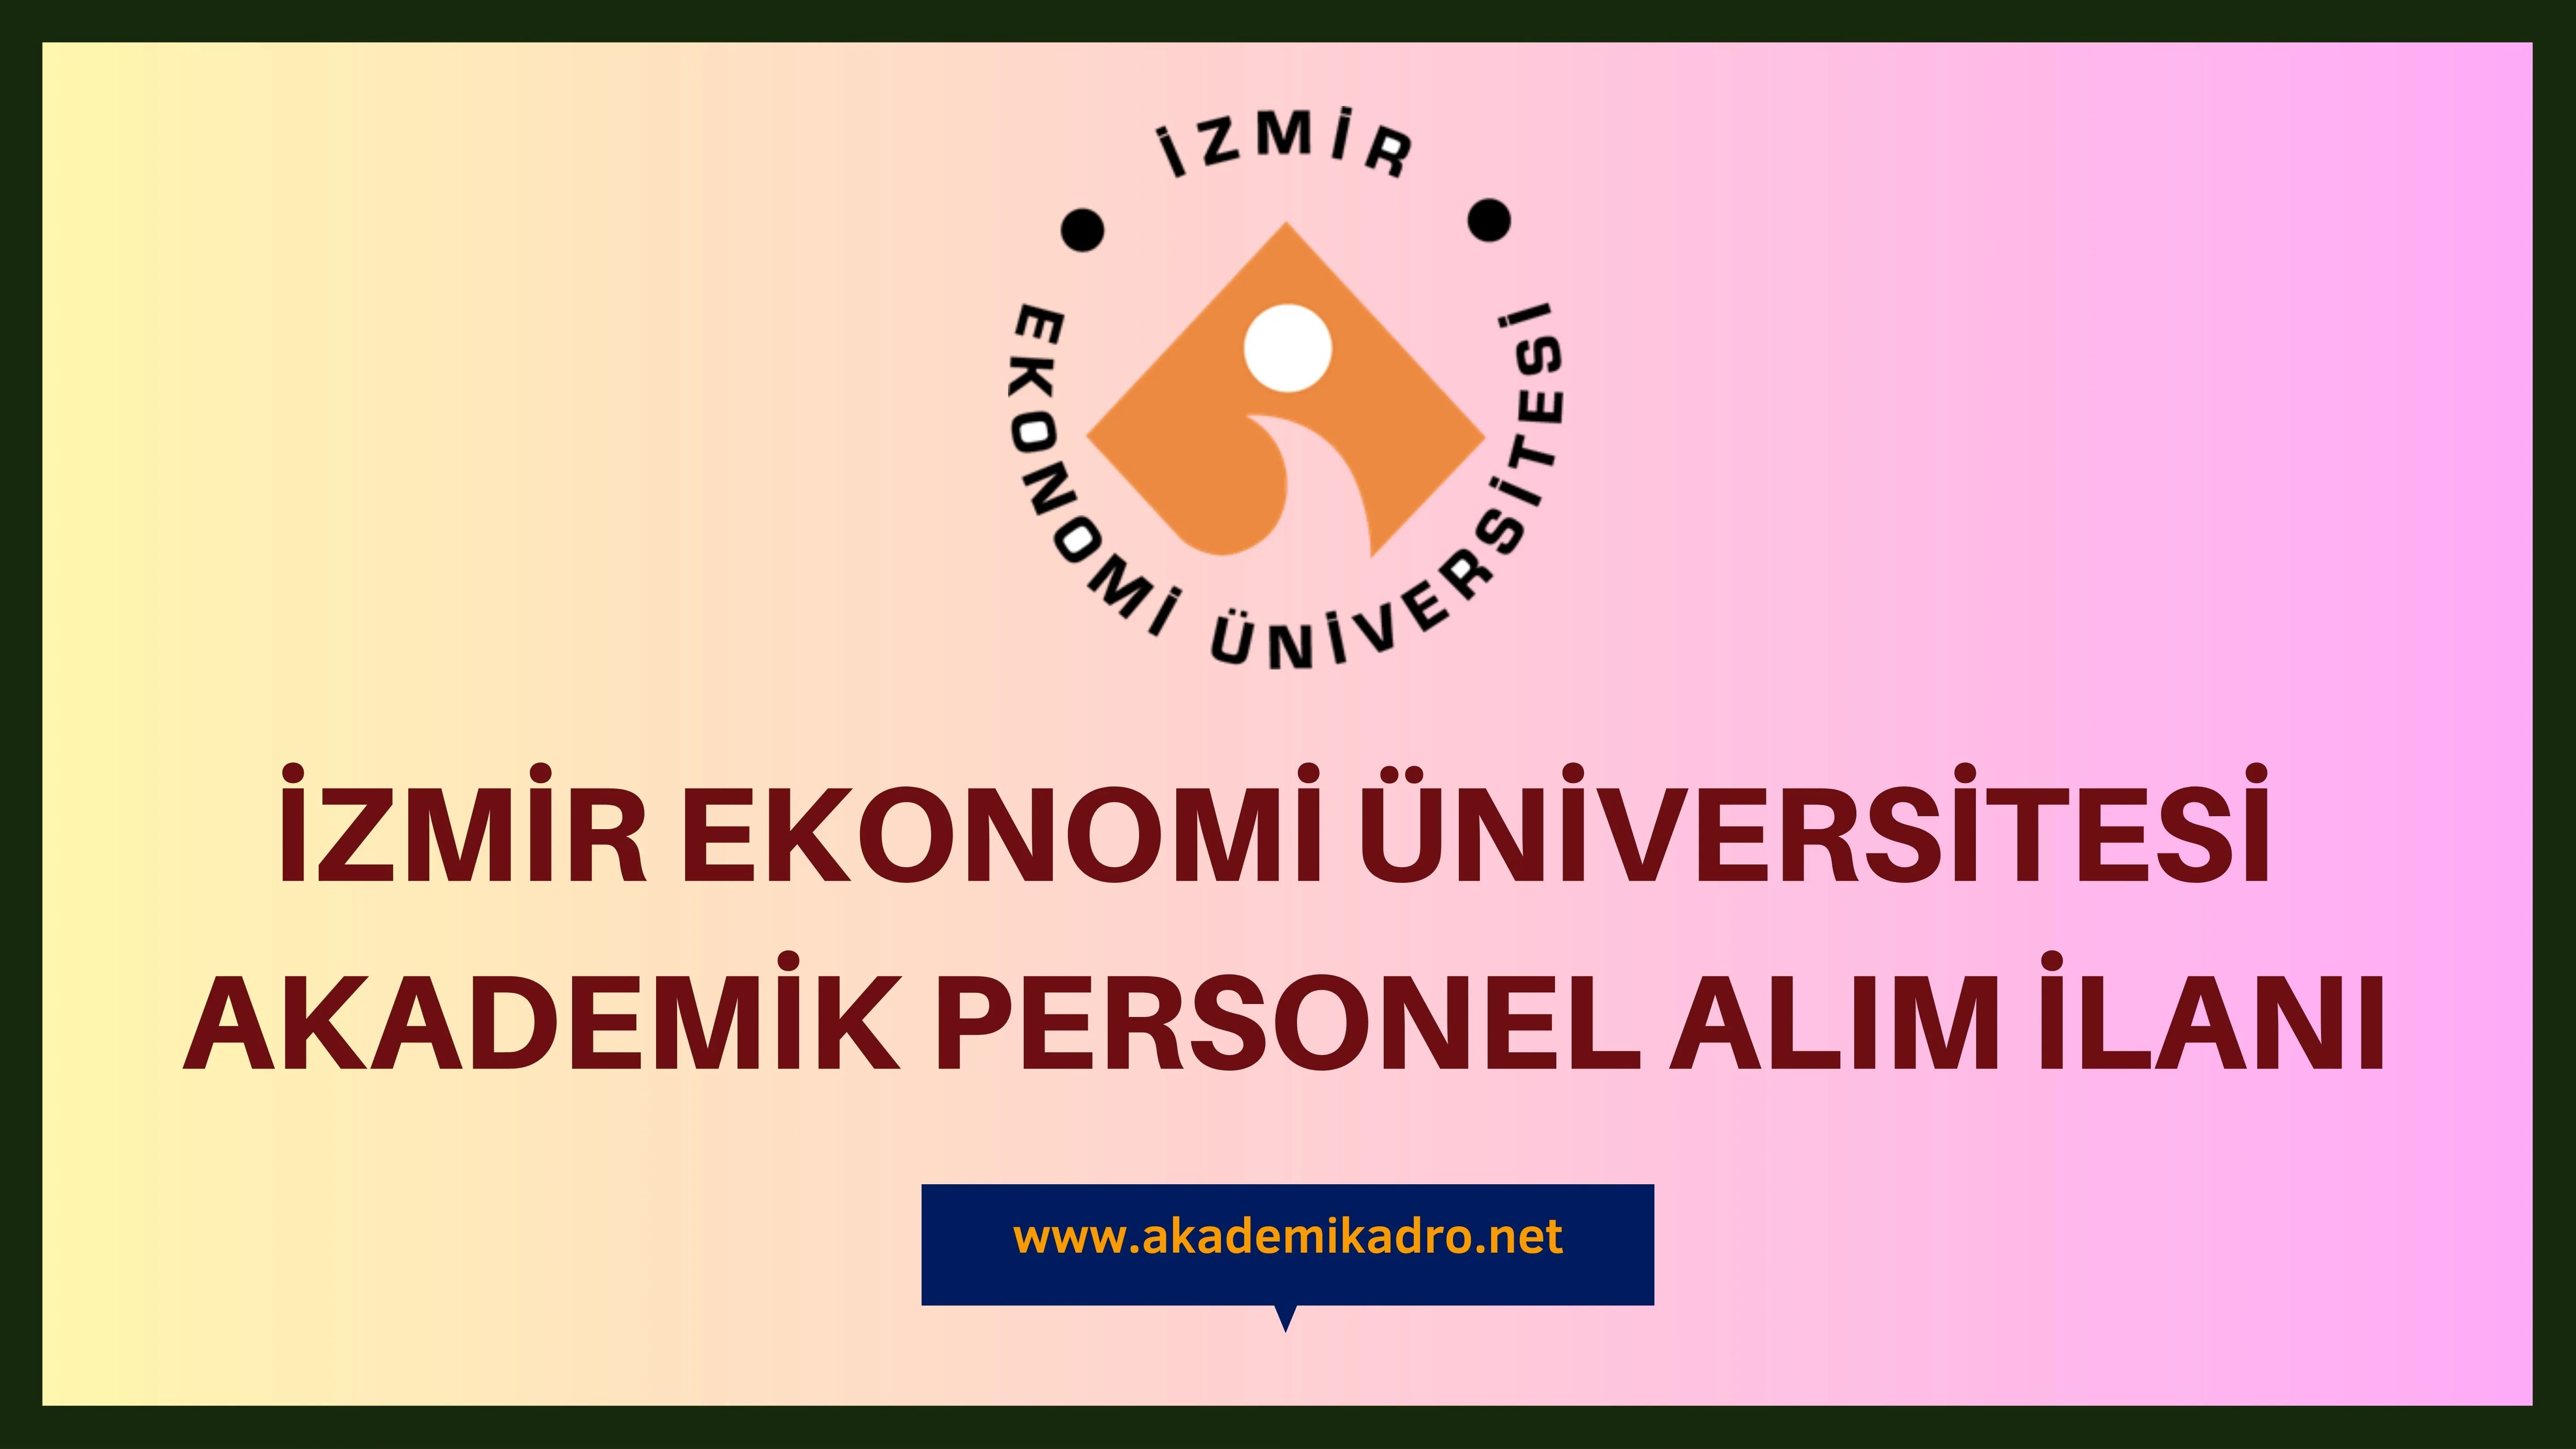 İzmir Ekonomi Üniversitesi çeşitli branşlarda 10 akademik personel alacak.